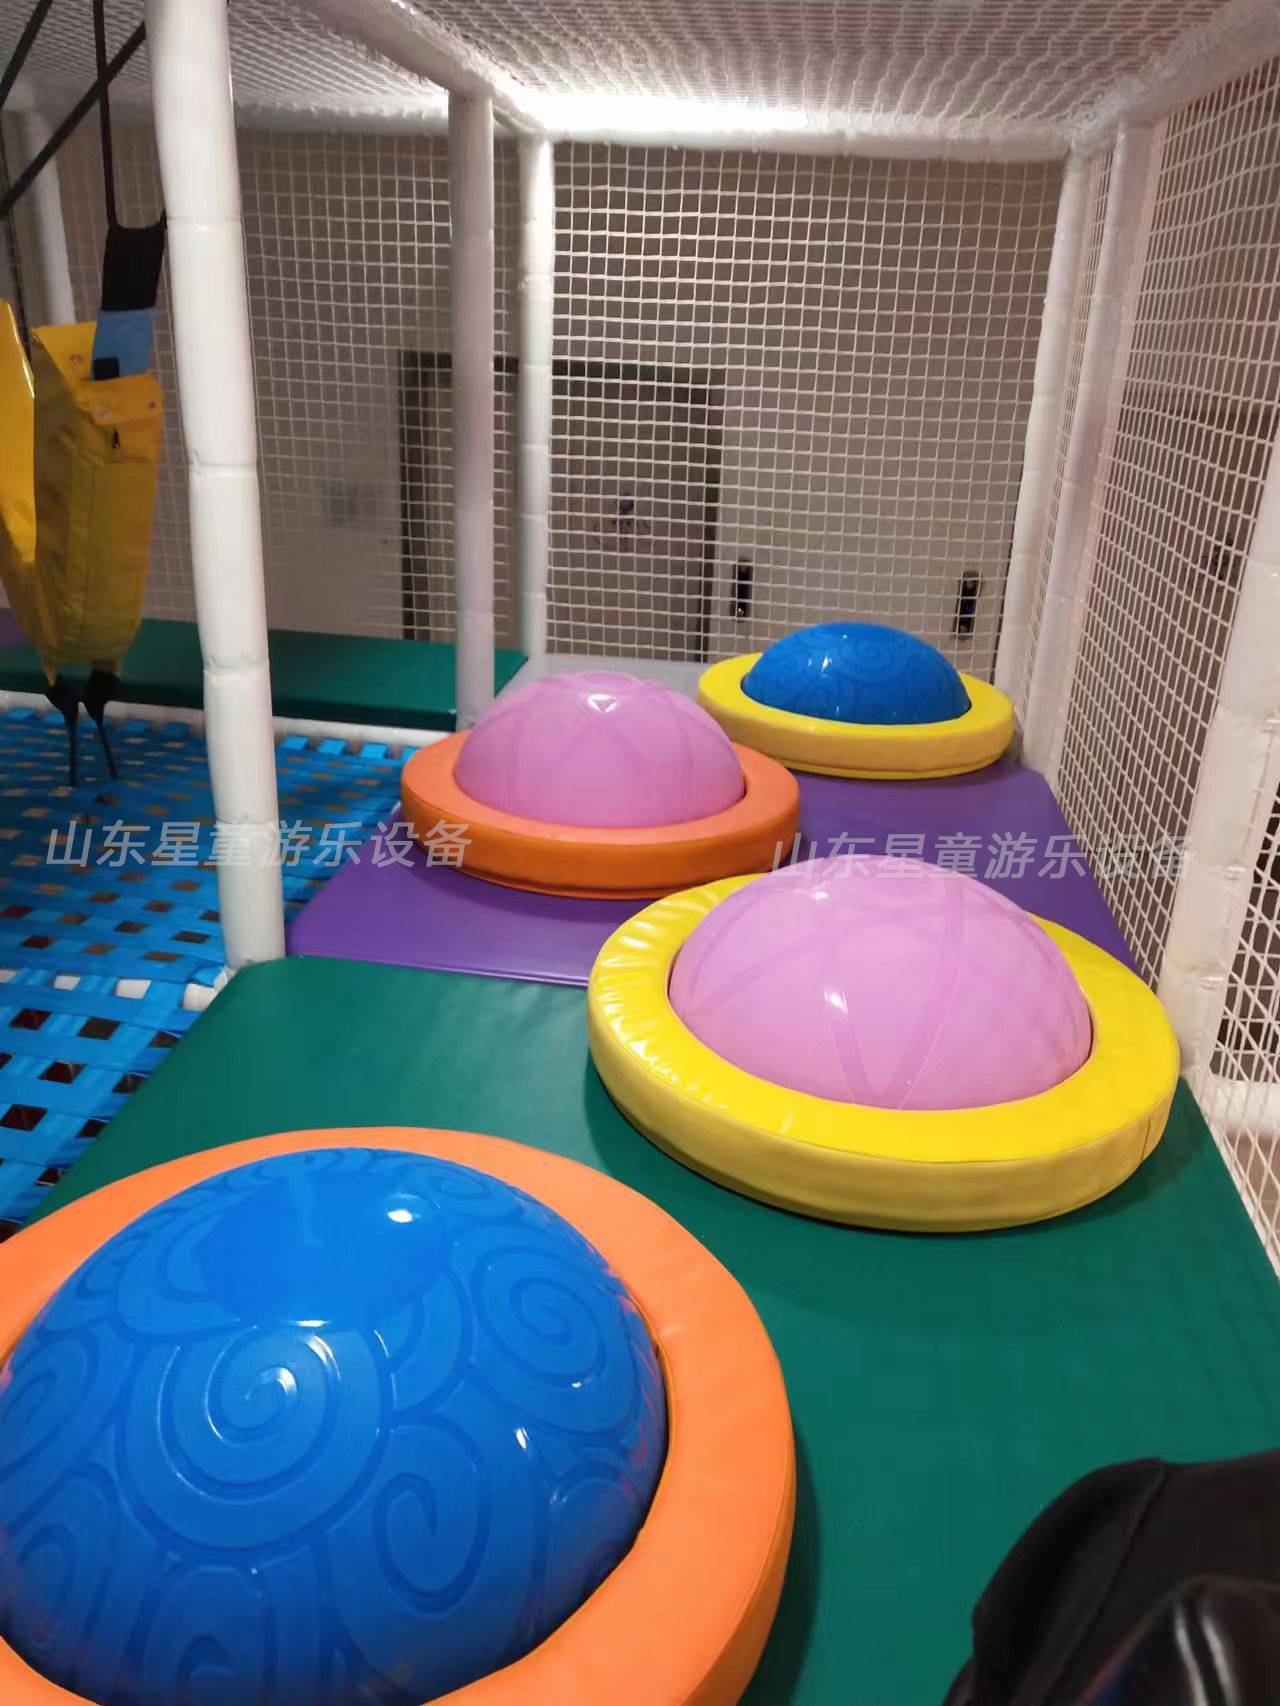 室内淘气堡 儿童乐园 游乐场设备生产厂家 幼儿园母婴店大小型滑滑梯球池设施